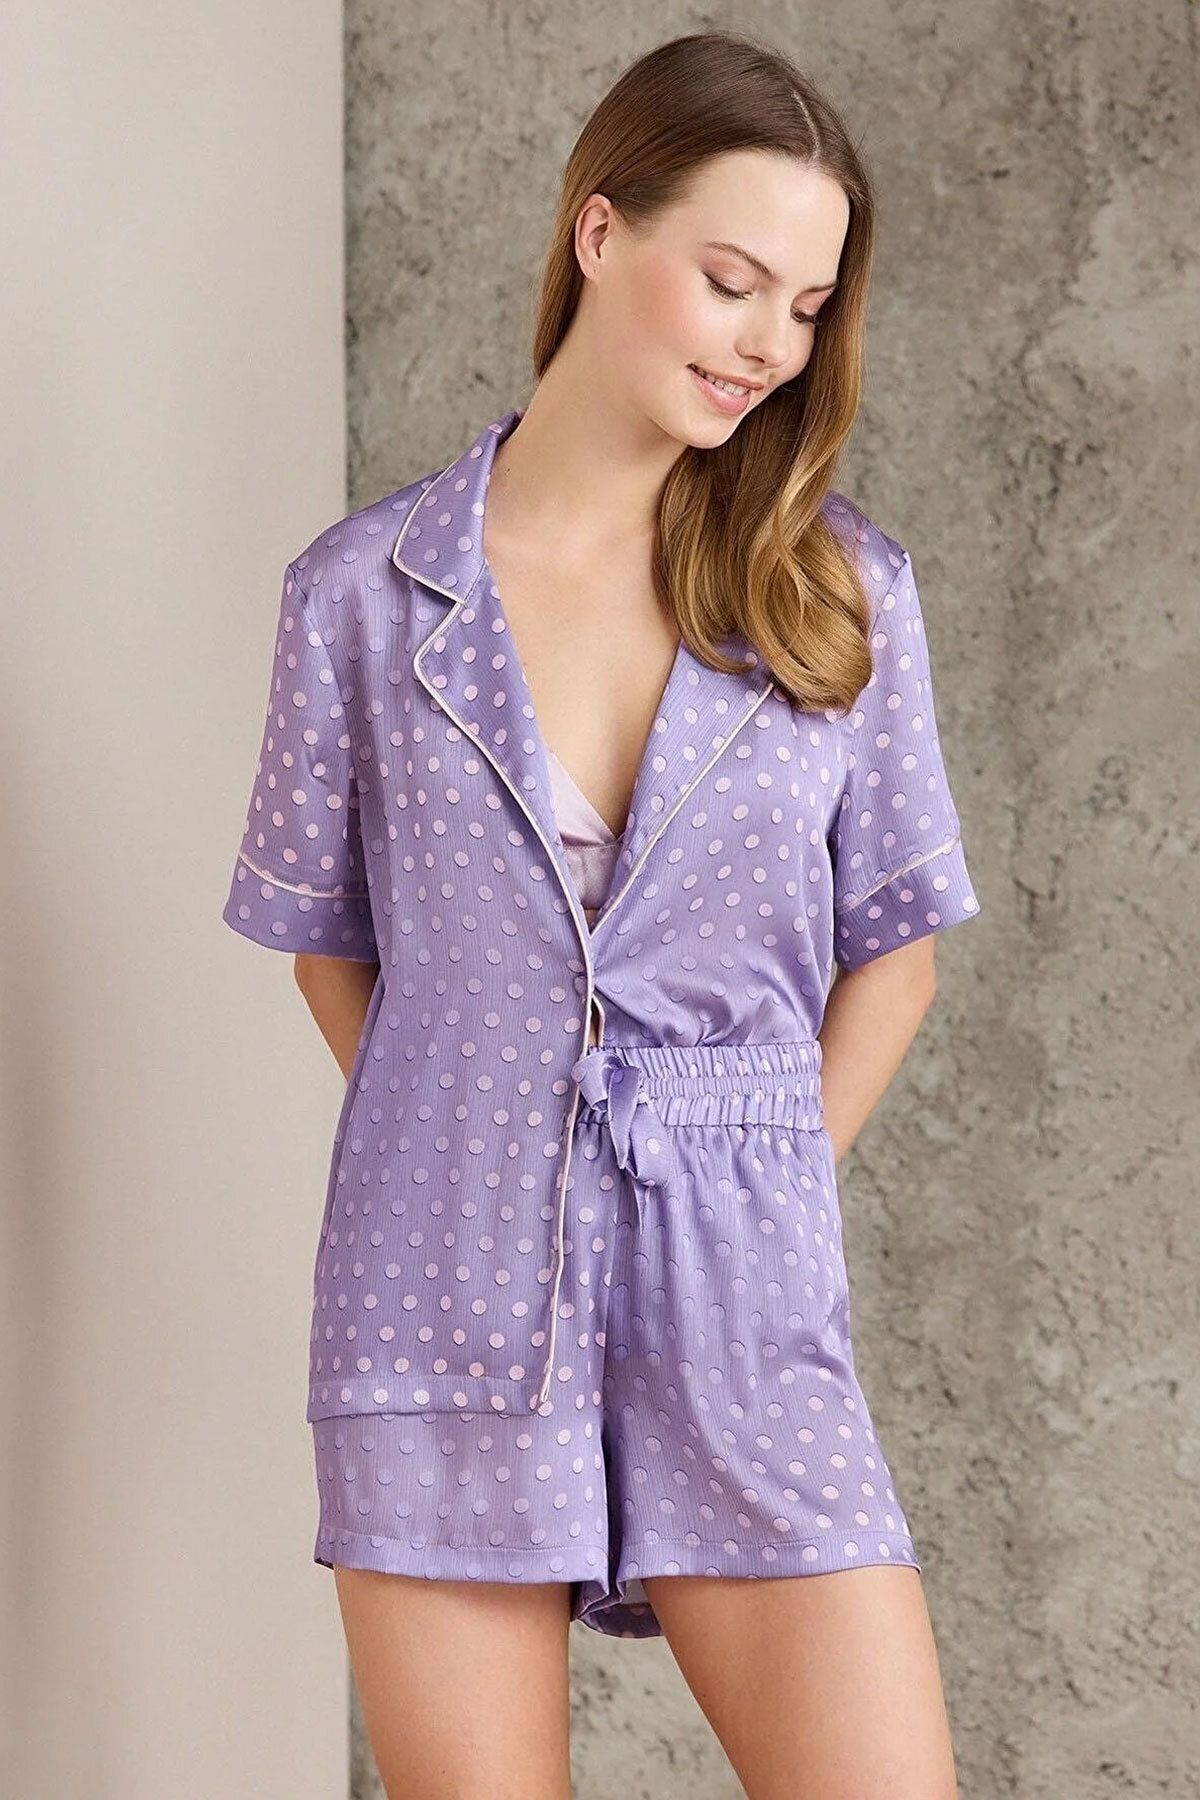 Pierre Cardin Kadın Saten Pijama Takımı (1 adet)